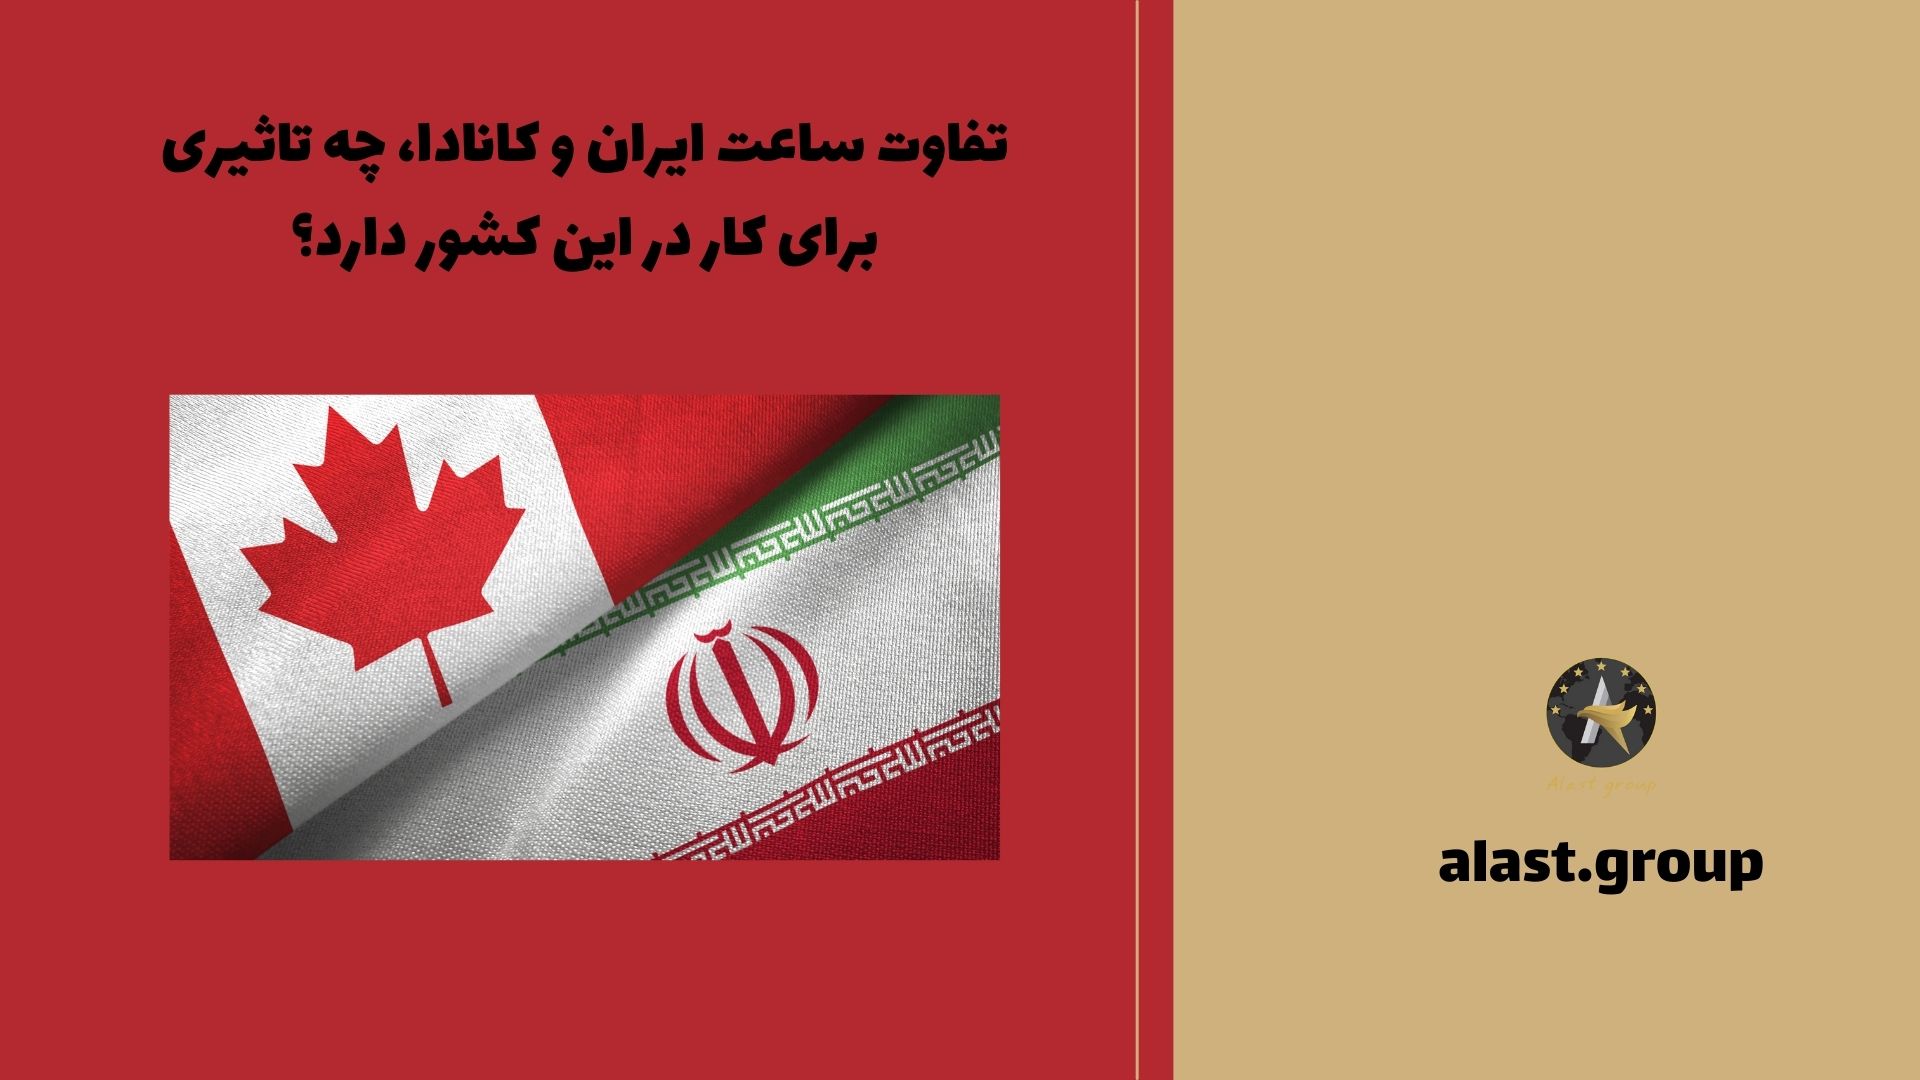 تفاوت ساعت ایران و کانادا، چه تاثیری برای کار در این کشور دارد؟